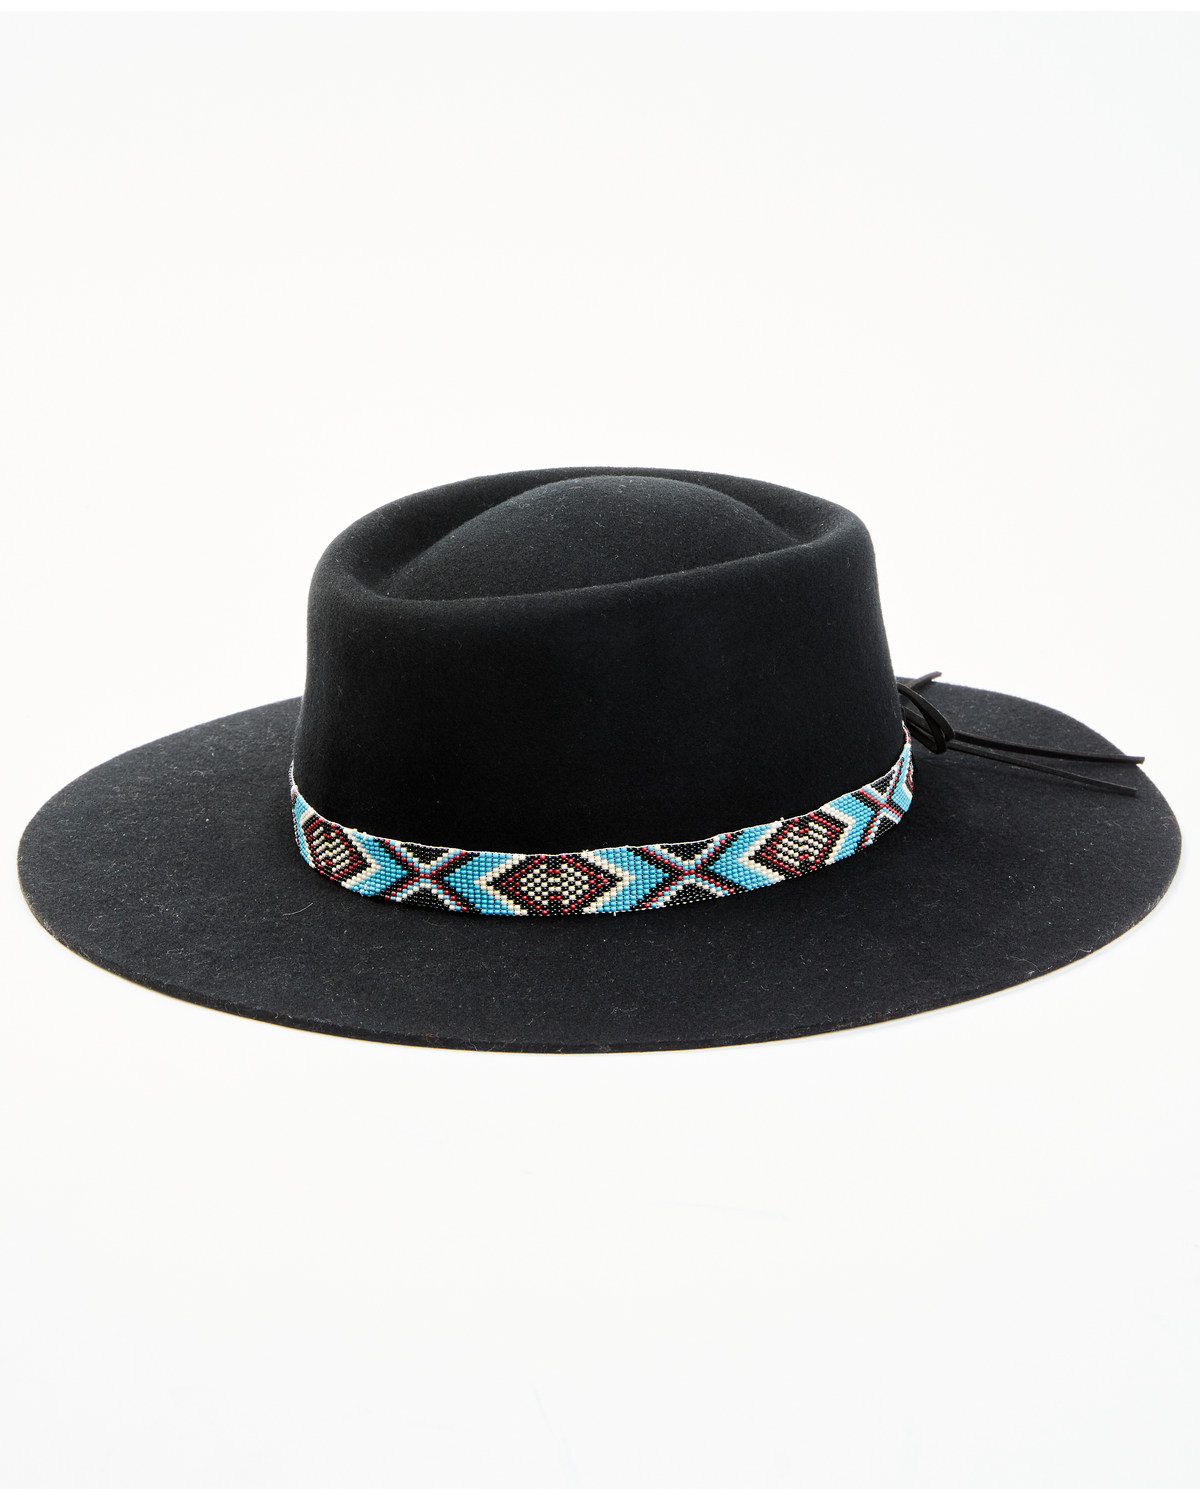 Idyllwind Women's Draw The Line Felt Western Fashion Hat